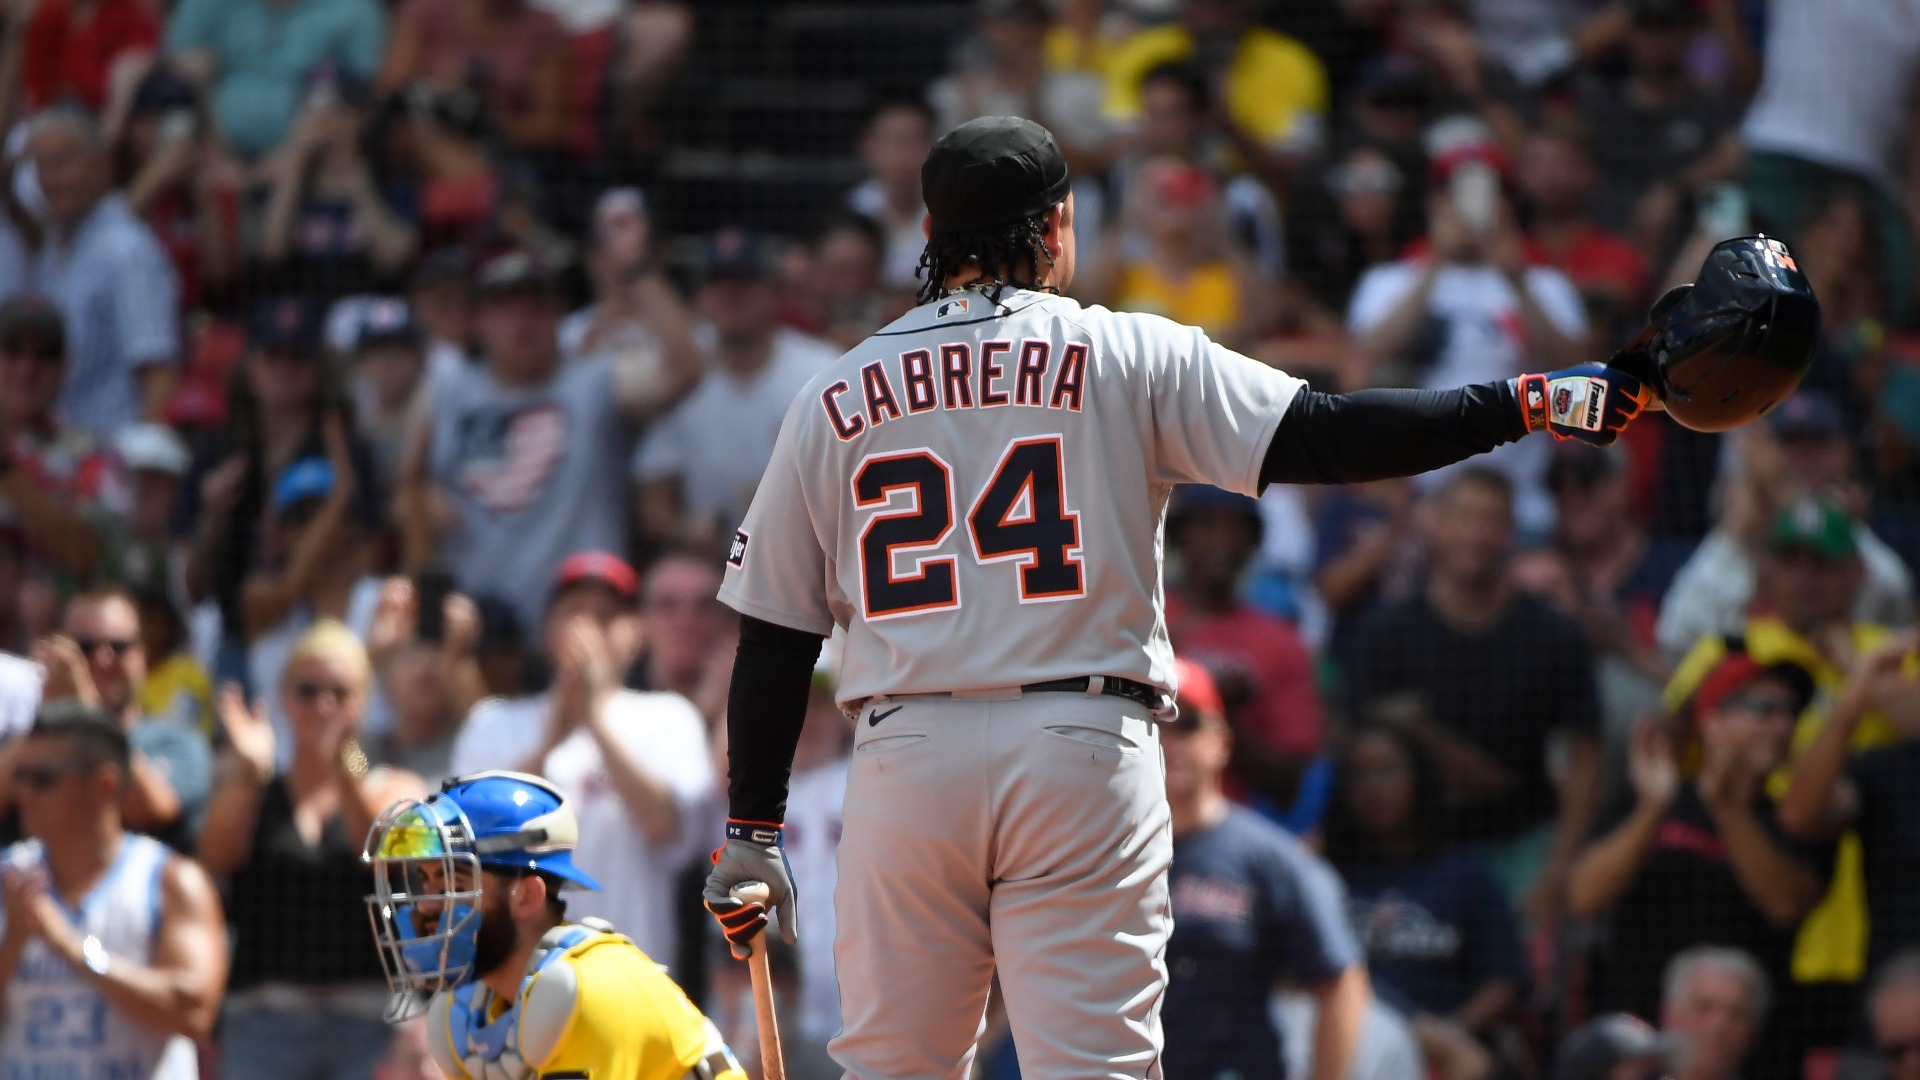 Miami Marlins: Top 5 Miguel Cabrera Home Runs with the Organization